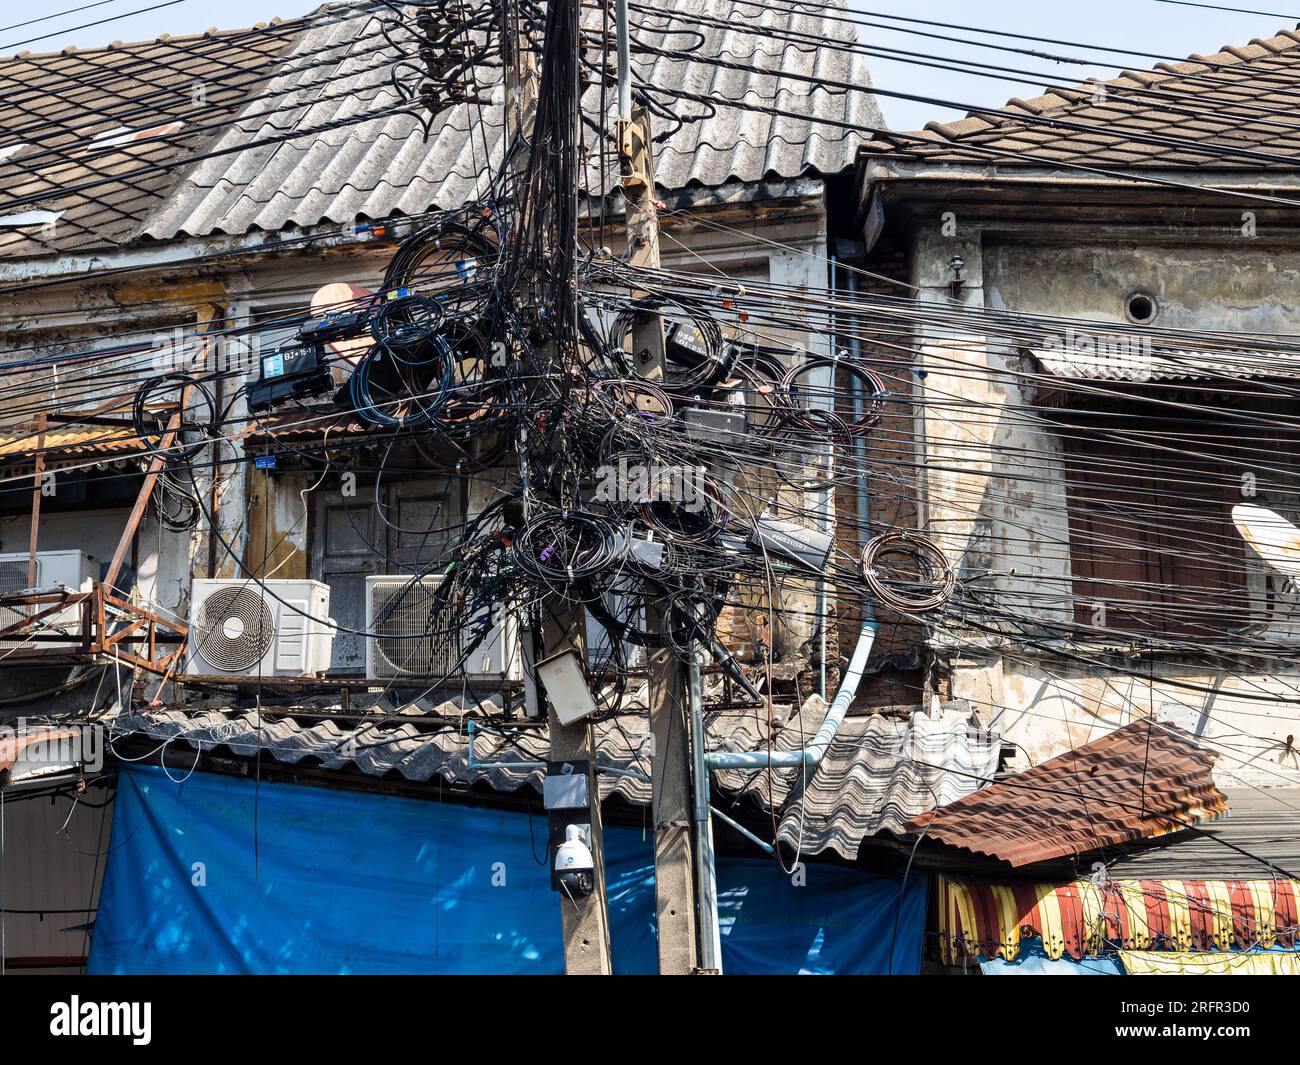 A Bangkok, in Thailandia, un impianto elettrico presenta una caotica serie di cavi aggrovigliati. Foto Stock